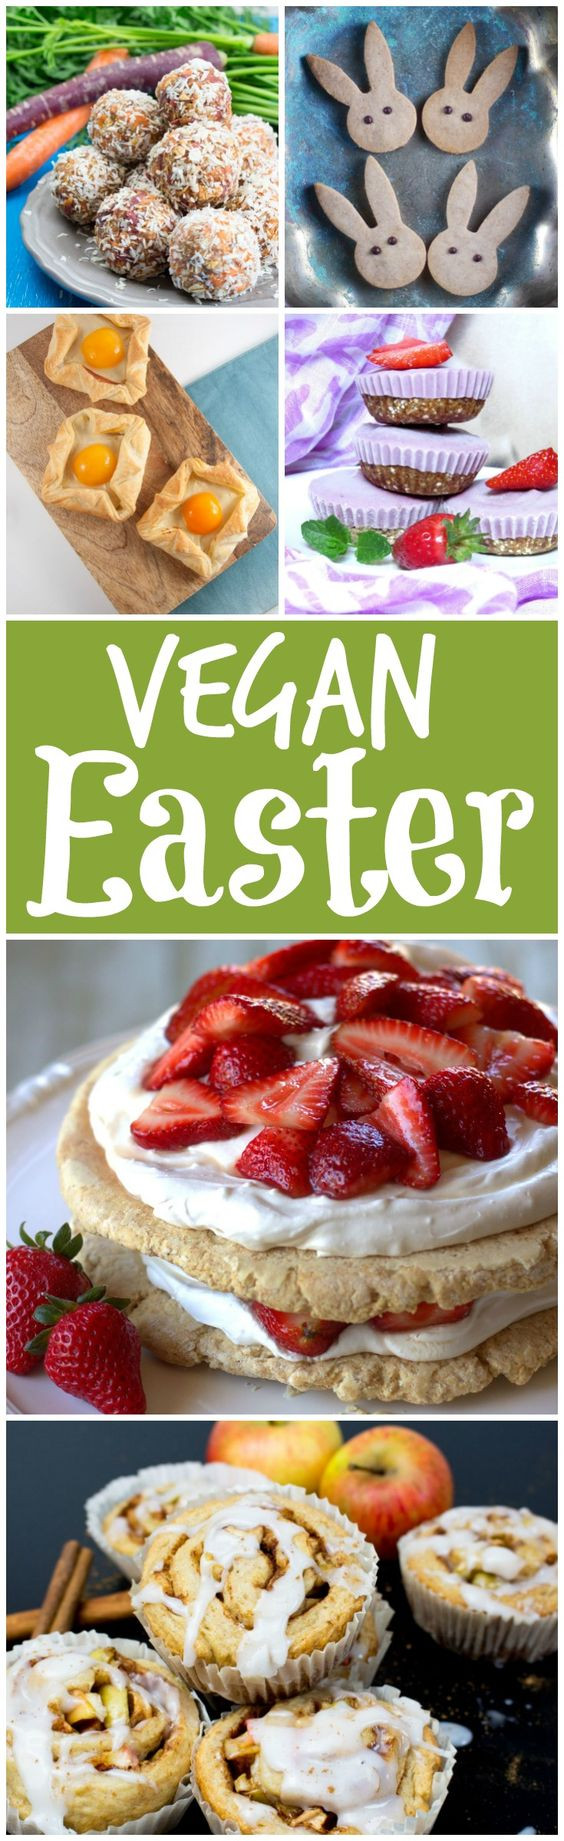 Vegan Easter Recipes
 15 Delicious Vegan Easter Recipes